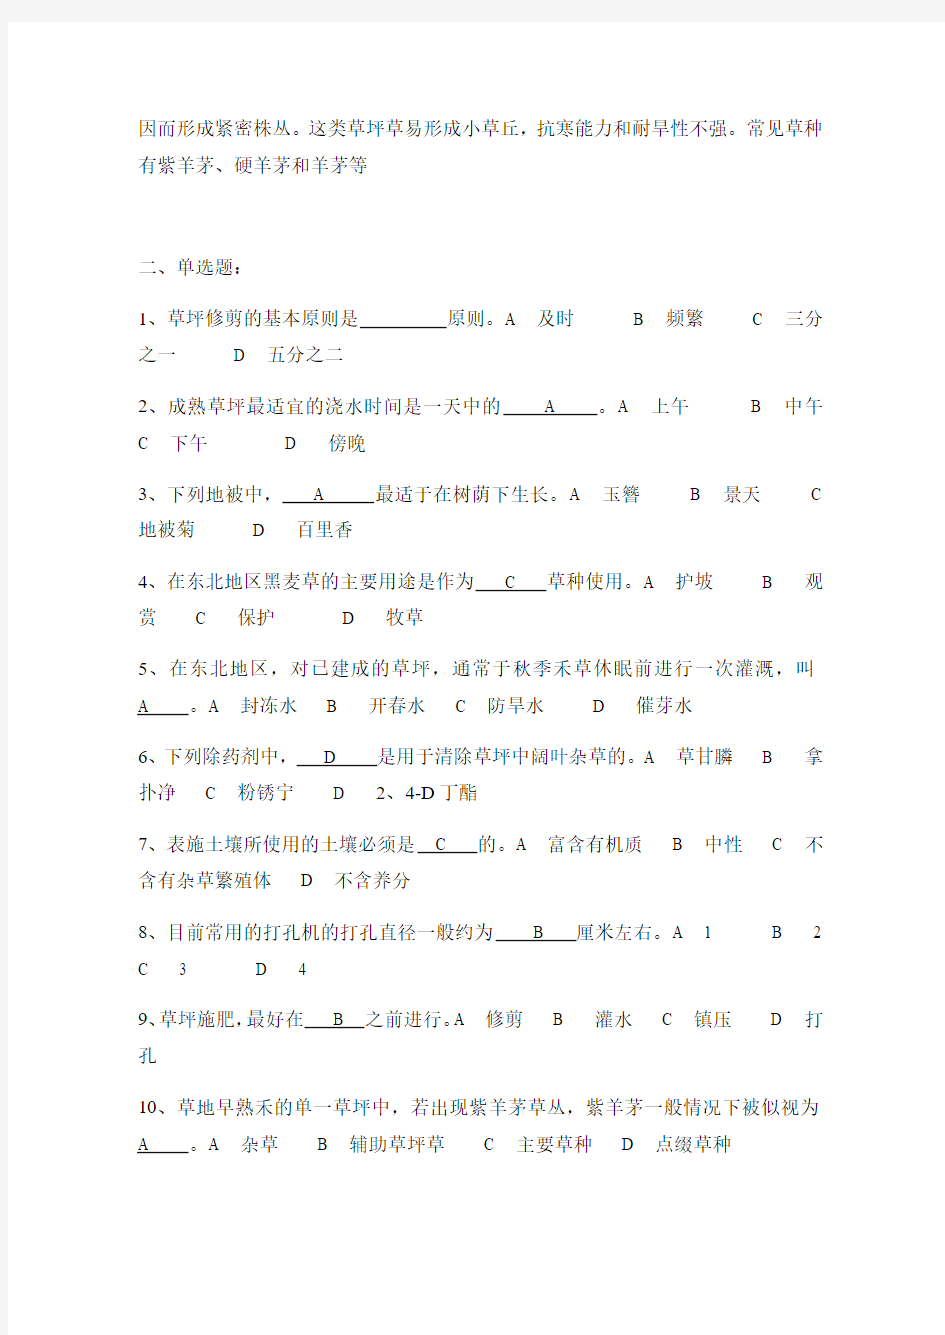 北京林业大学草坪学试题库 直接打印 